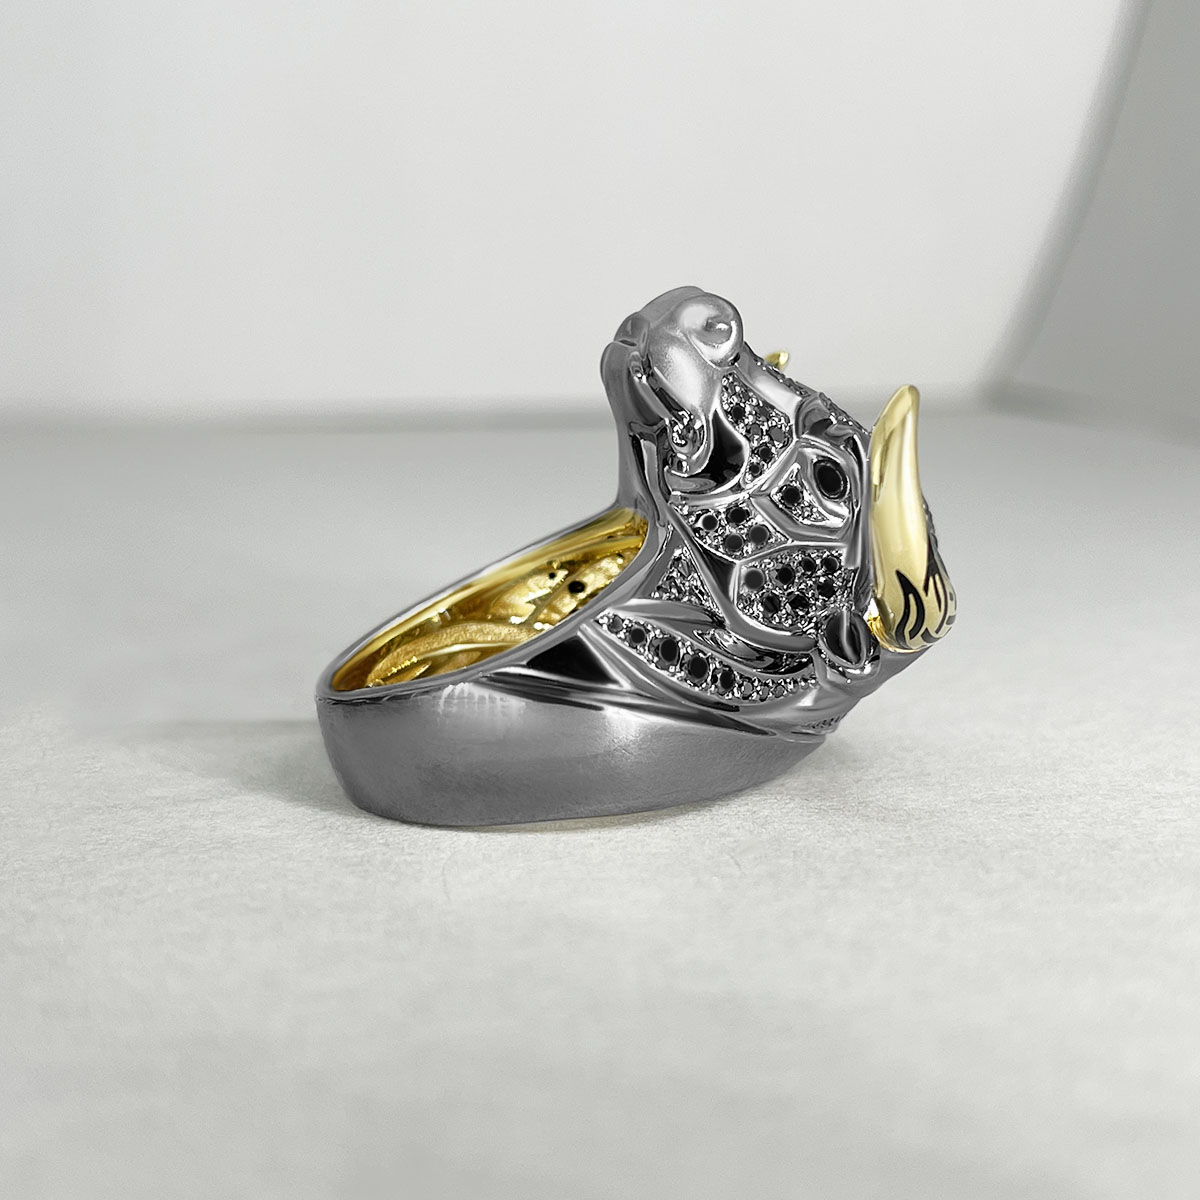 Мужское кольцо Бык с черными бриллиантами и рубинами в желтом золоте 750 пробы, фото № 2